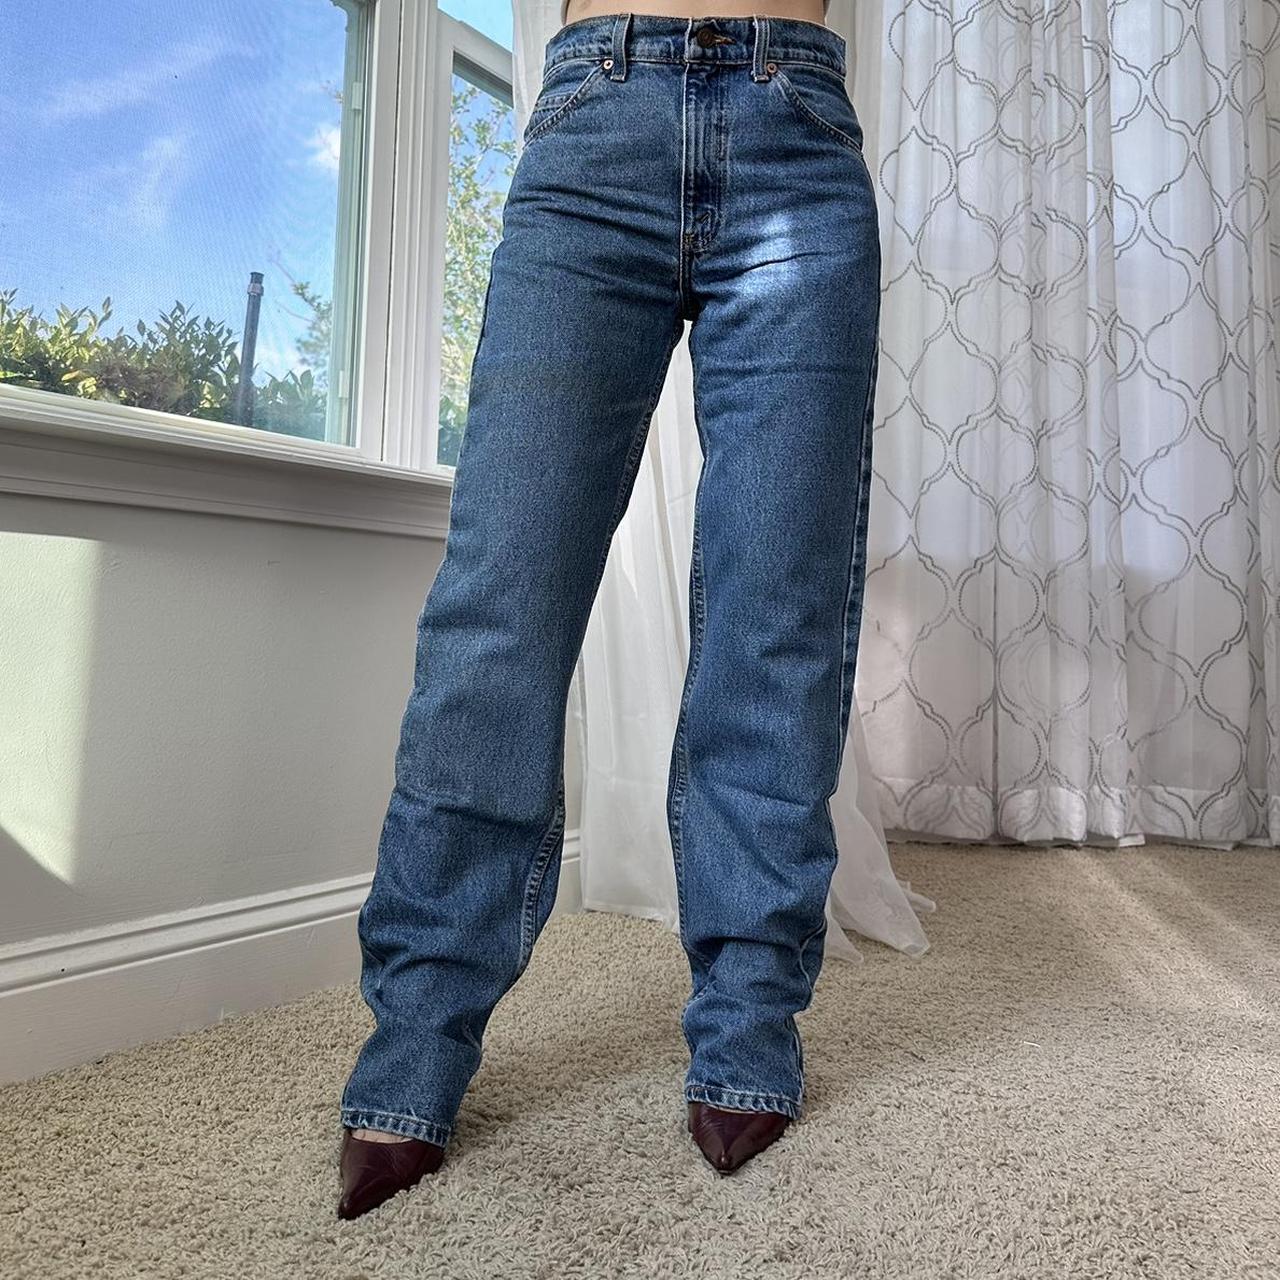 Levi's Women's Blue Jeans